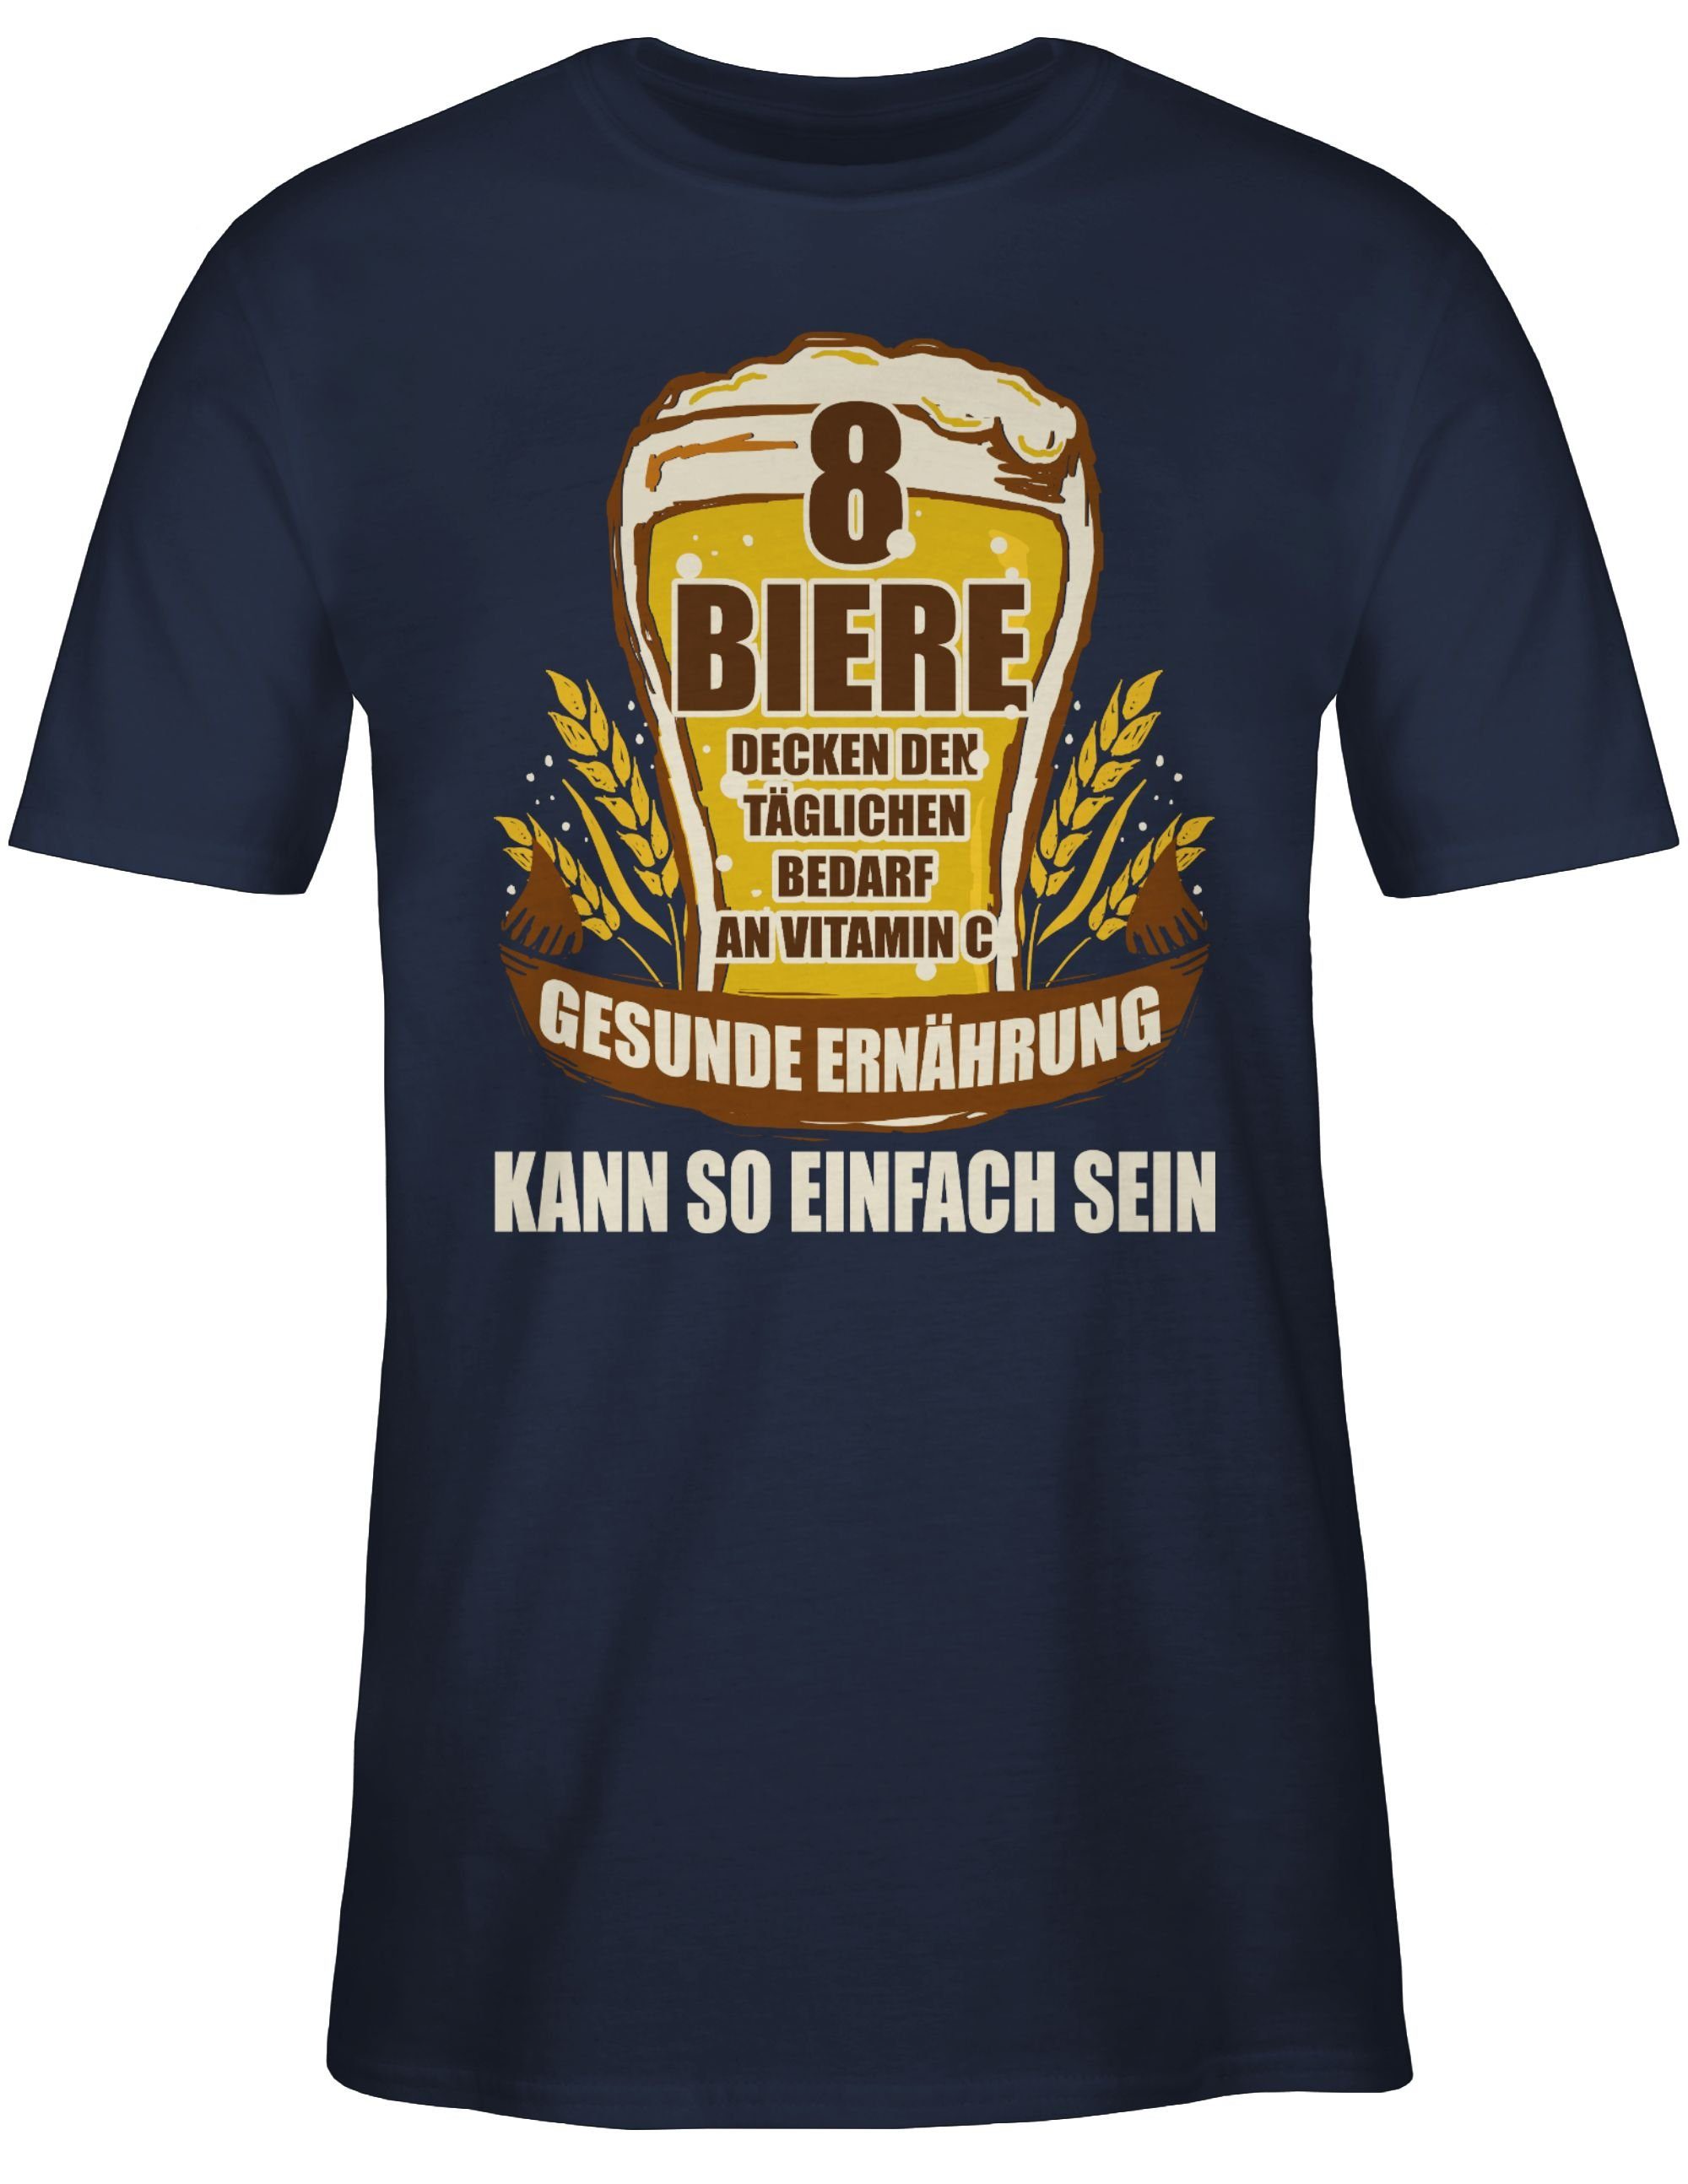 Shirtracer T-Shirt Navy mit Biere 8 C Statement an decken Tagesbedarf Vitamin 2 Blau Sprüche den Spruch